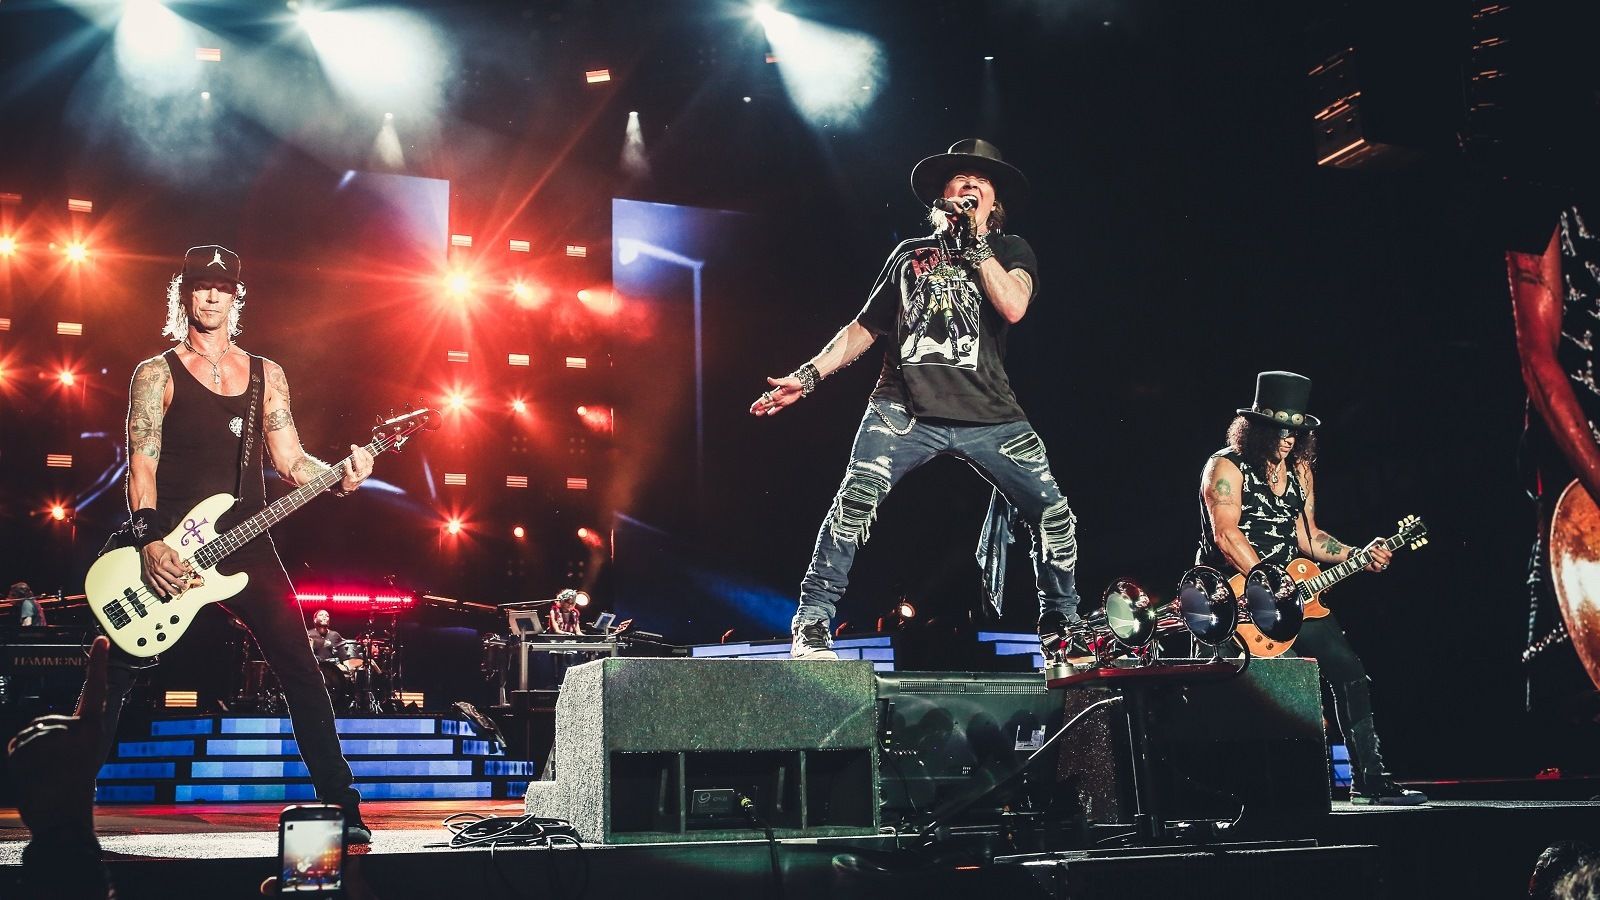 Tele lesz a környék Guns N’ Roses koncertekkel, de Budapest kimarad